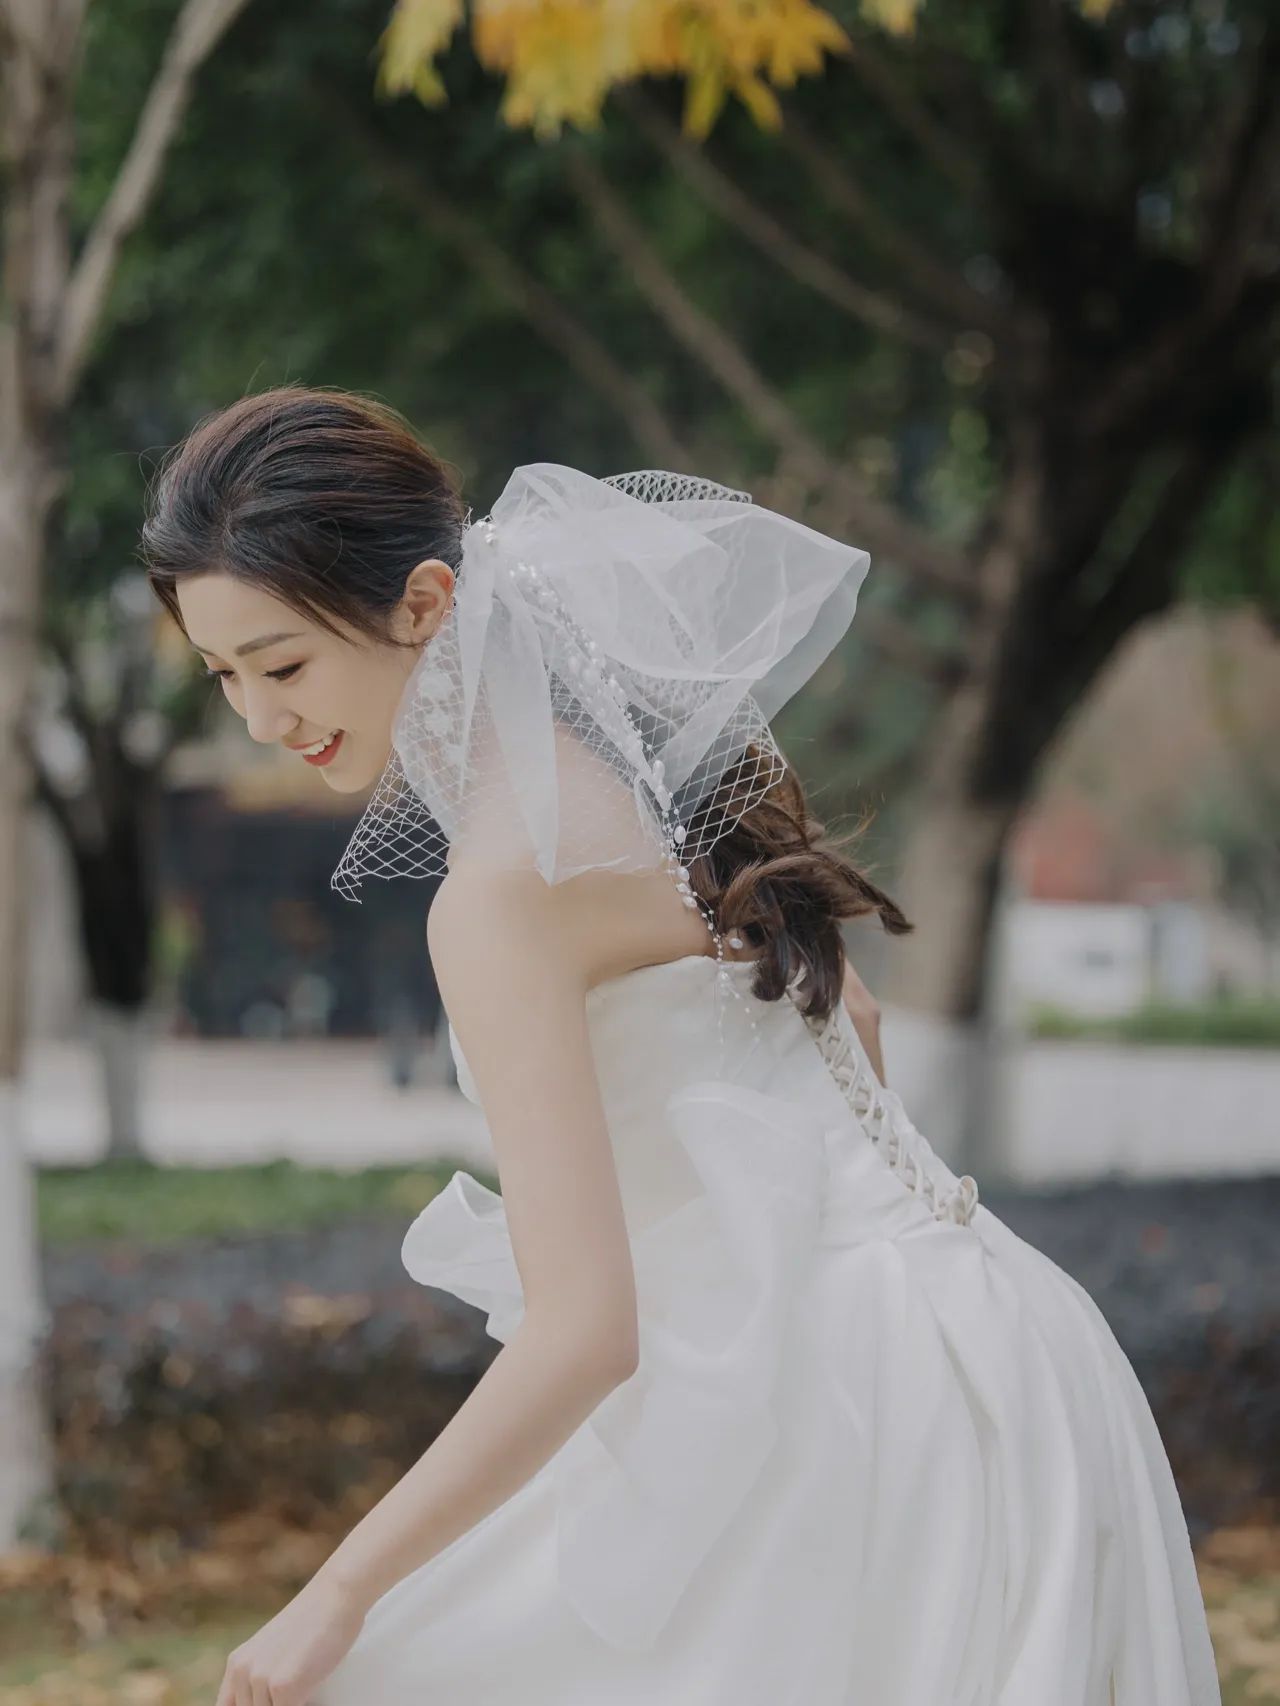 婚纱摄影跟拍  这新娘子真的好漂亮